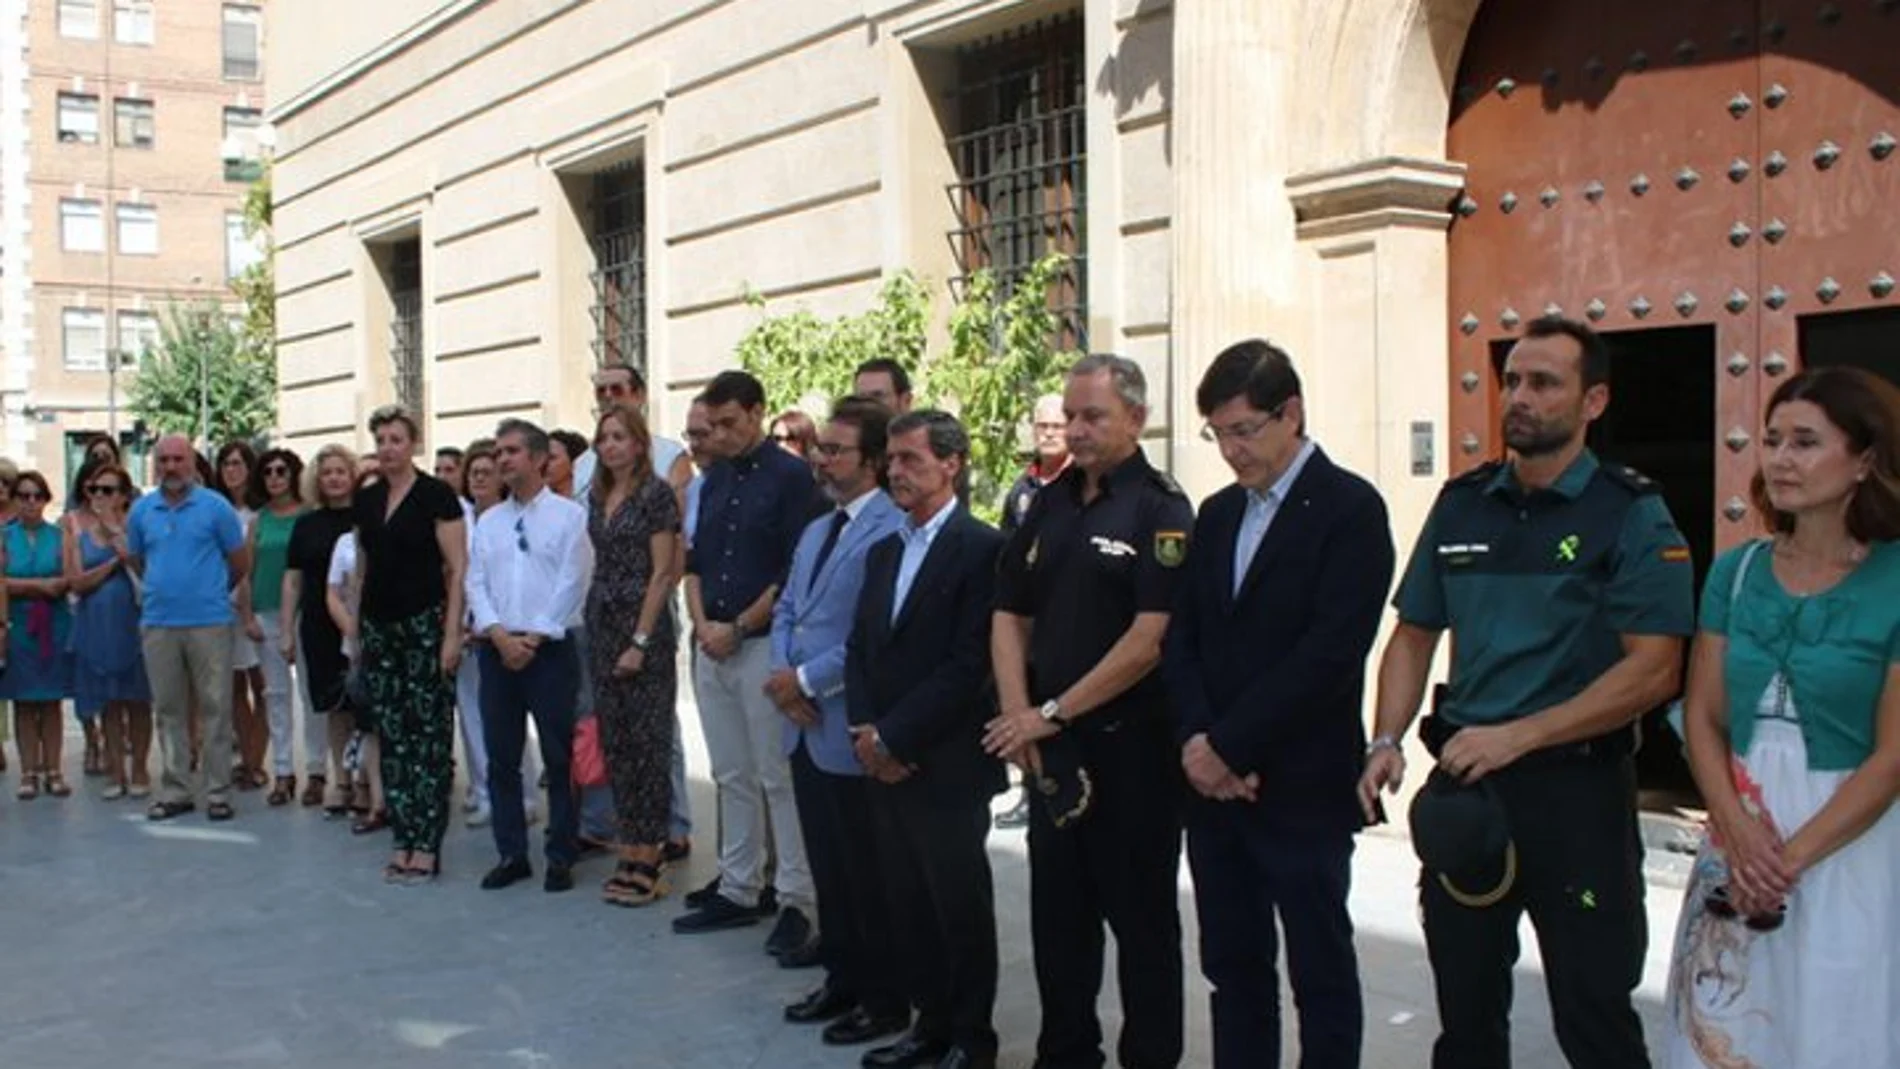 Minuto de silencio en el Palacio de San Esteban por el atentado de Barcelona